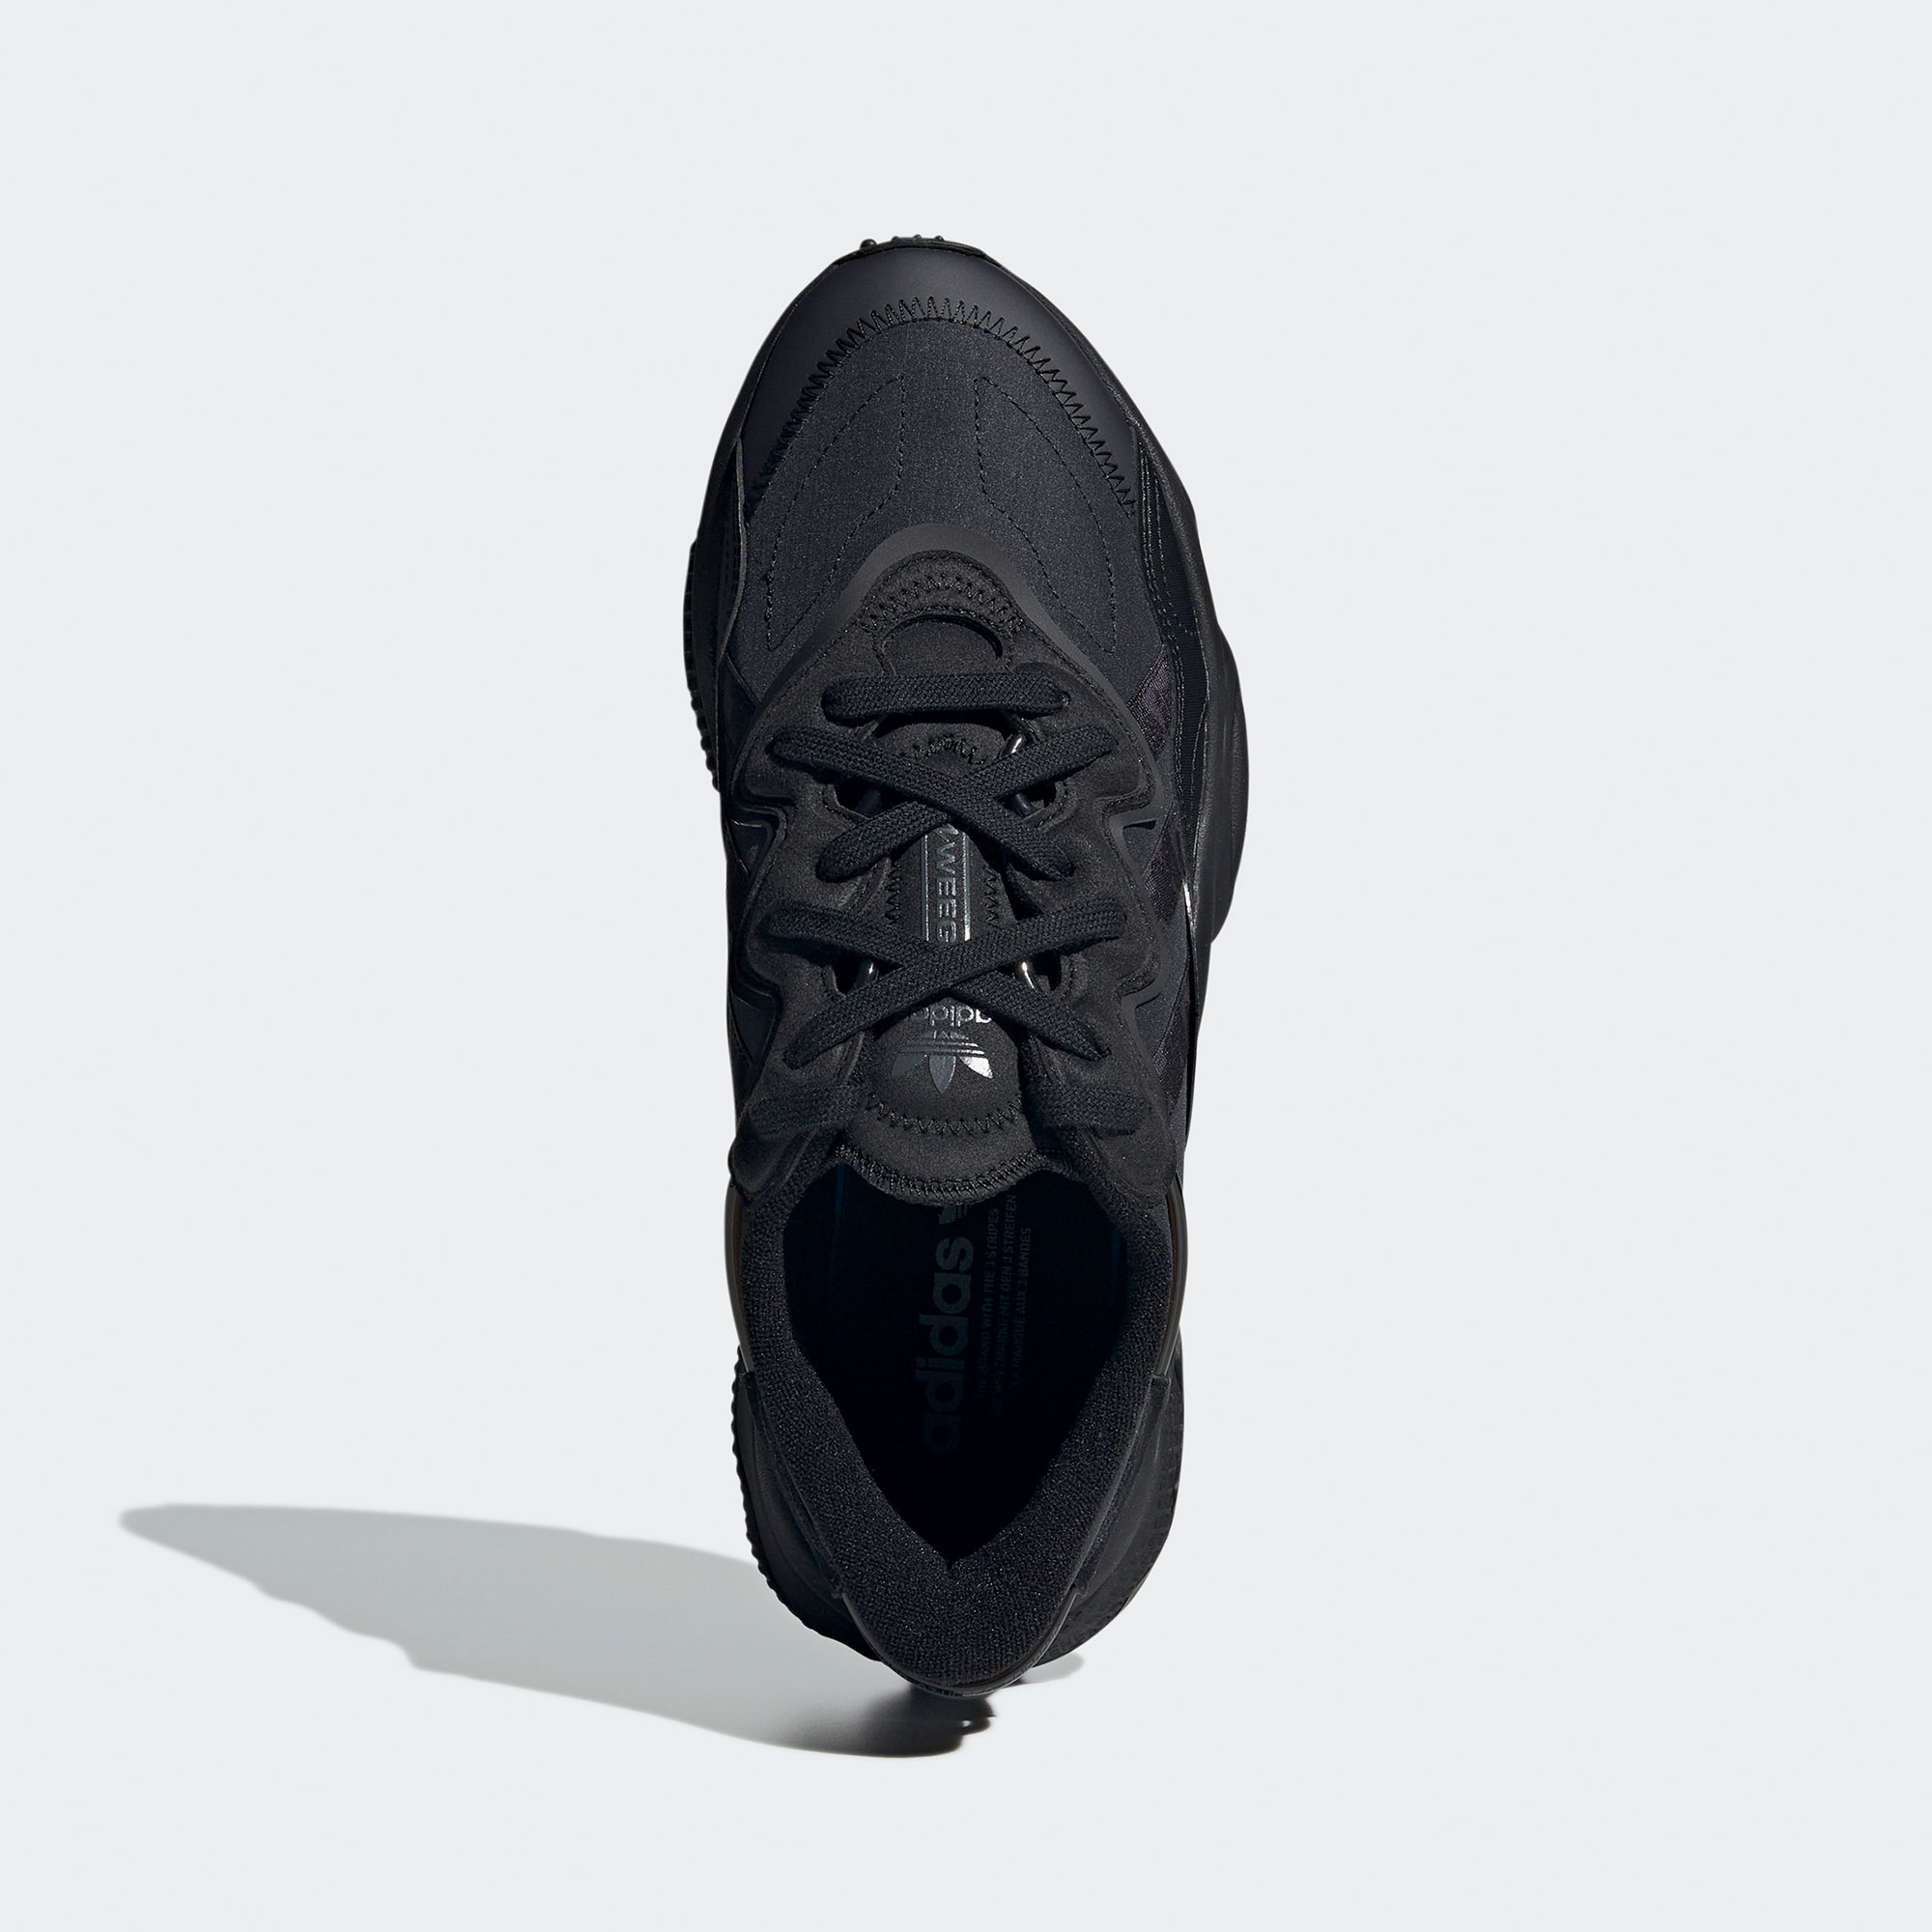 adidas Ozweego Unisex Siyah Spor Ayakkabı